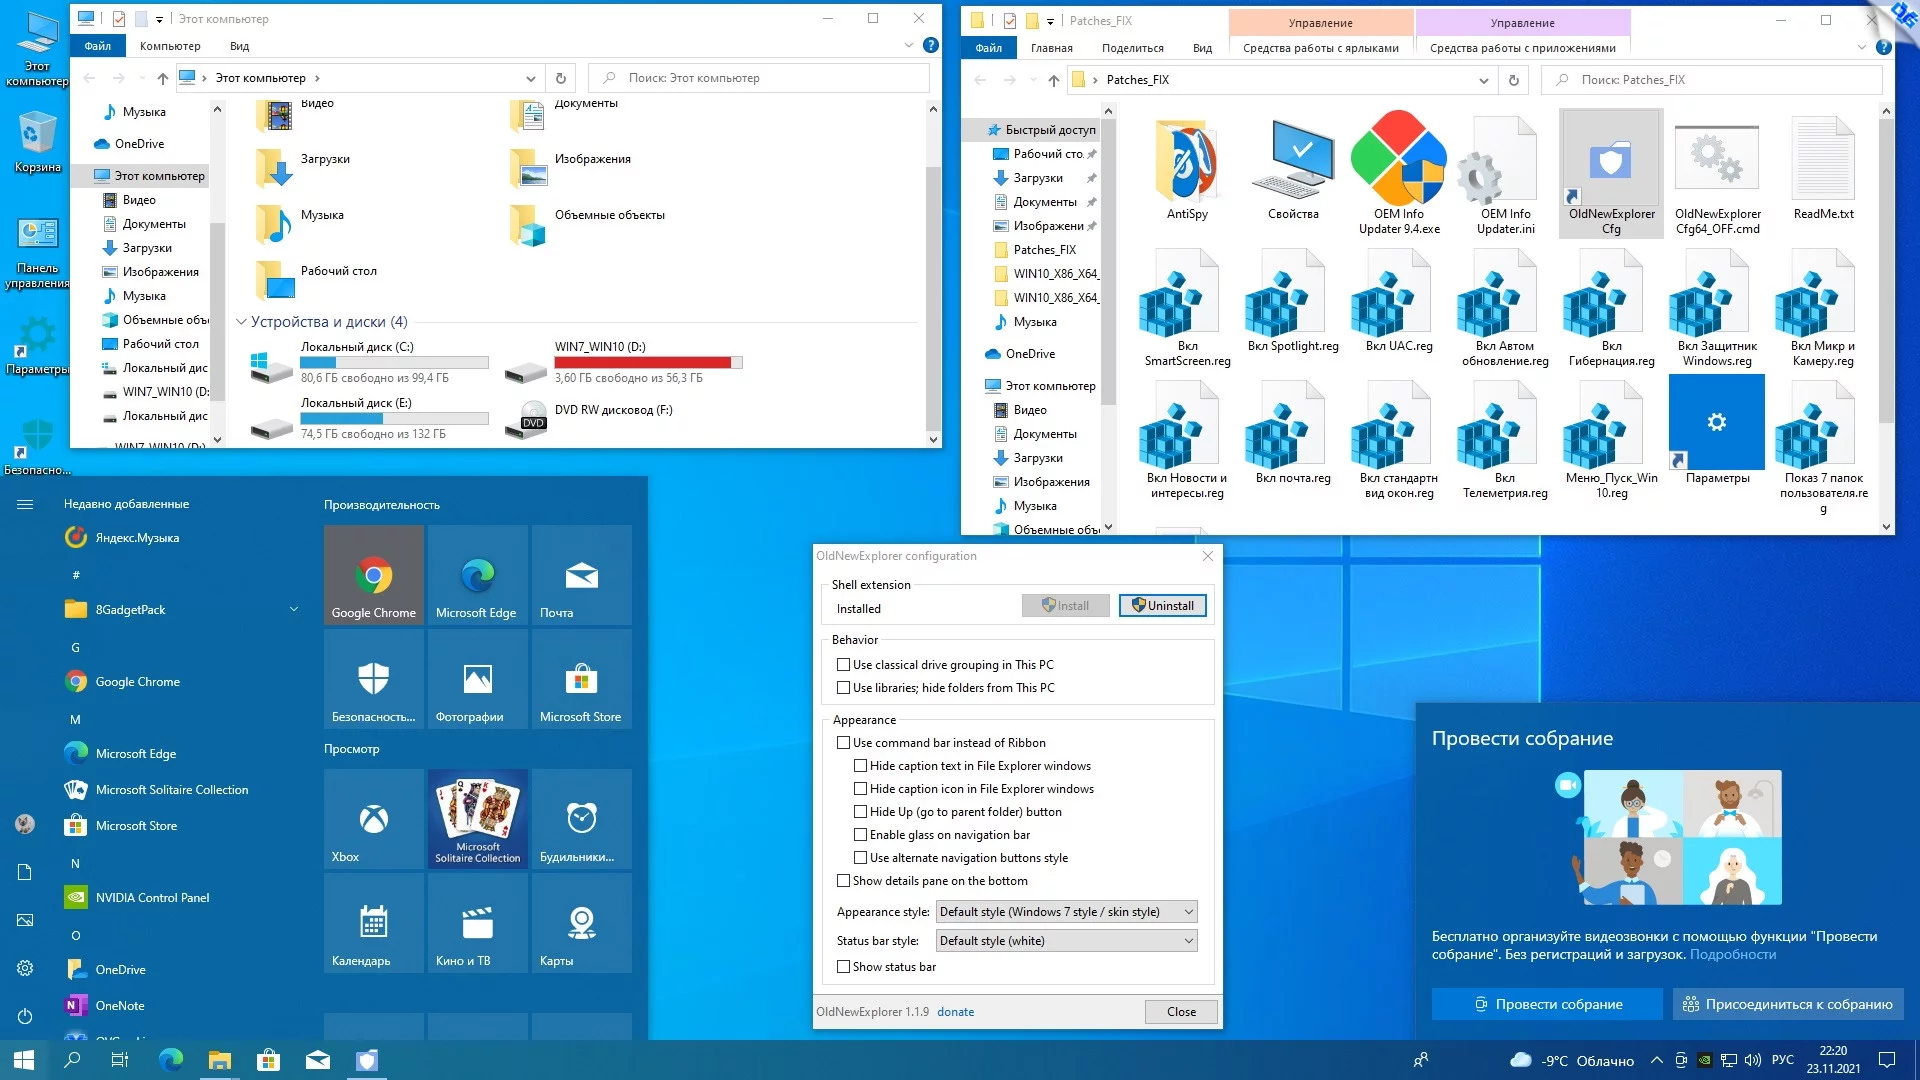 Windows 10 Professional VL x86-x64 21H2 RU by OVGorskiy 11.2021